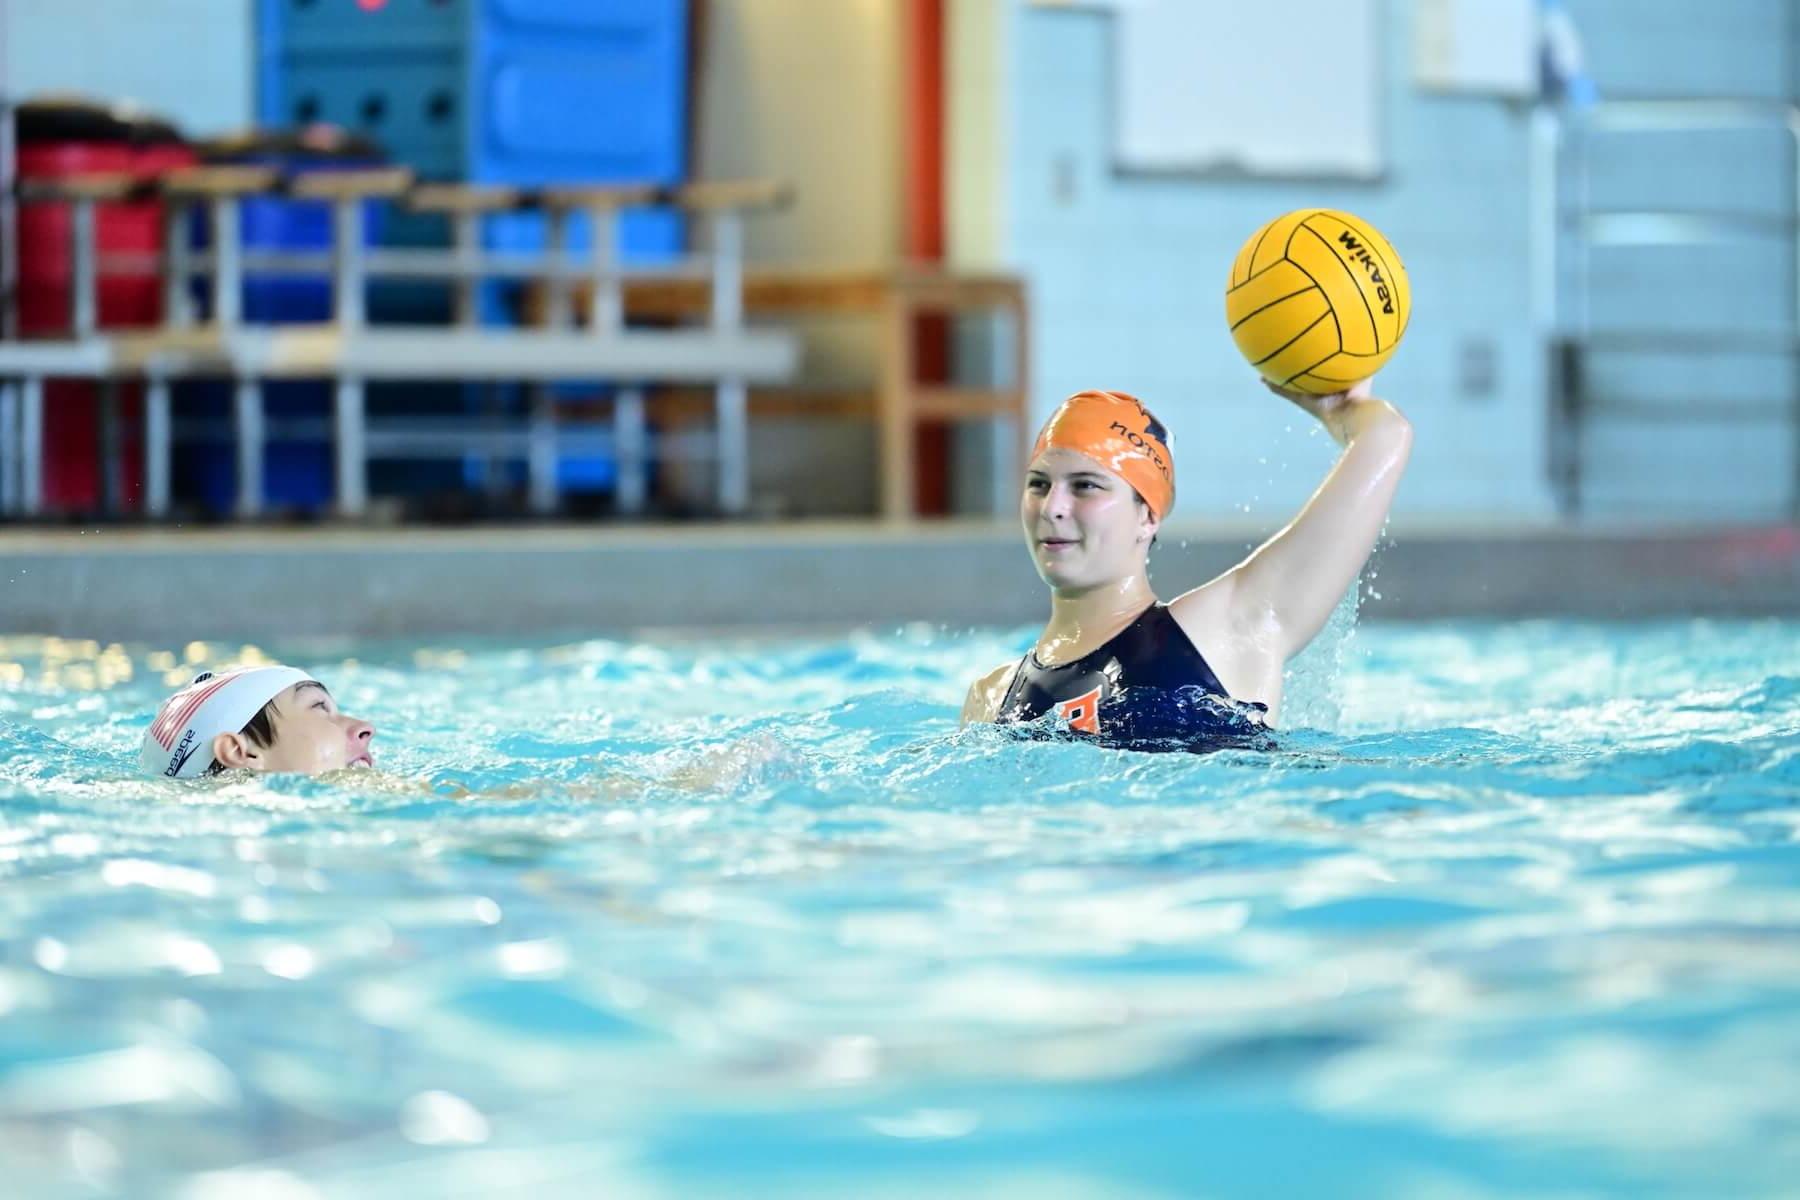 道德文化菲尔德斯顿学校菲尔德斯顿上水球运动员在游泳池扔球